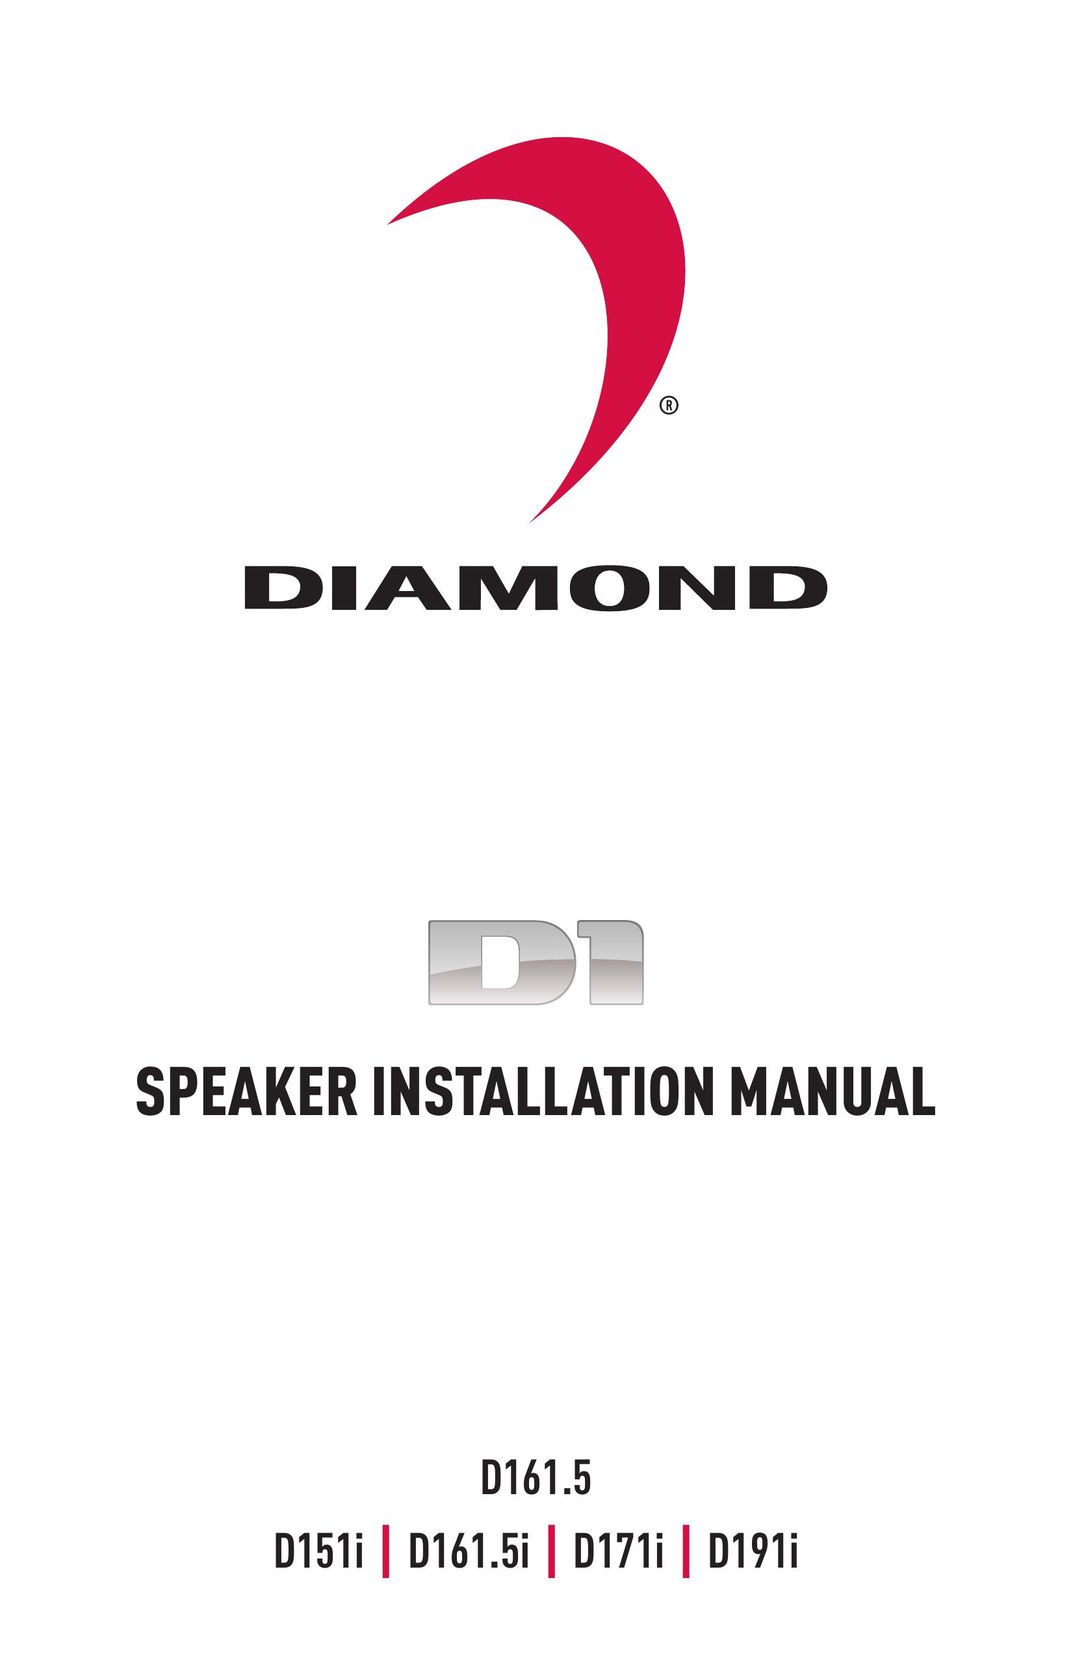 Diamond Audio Technology D171I Speaker User Manual